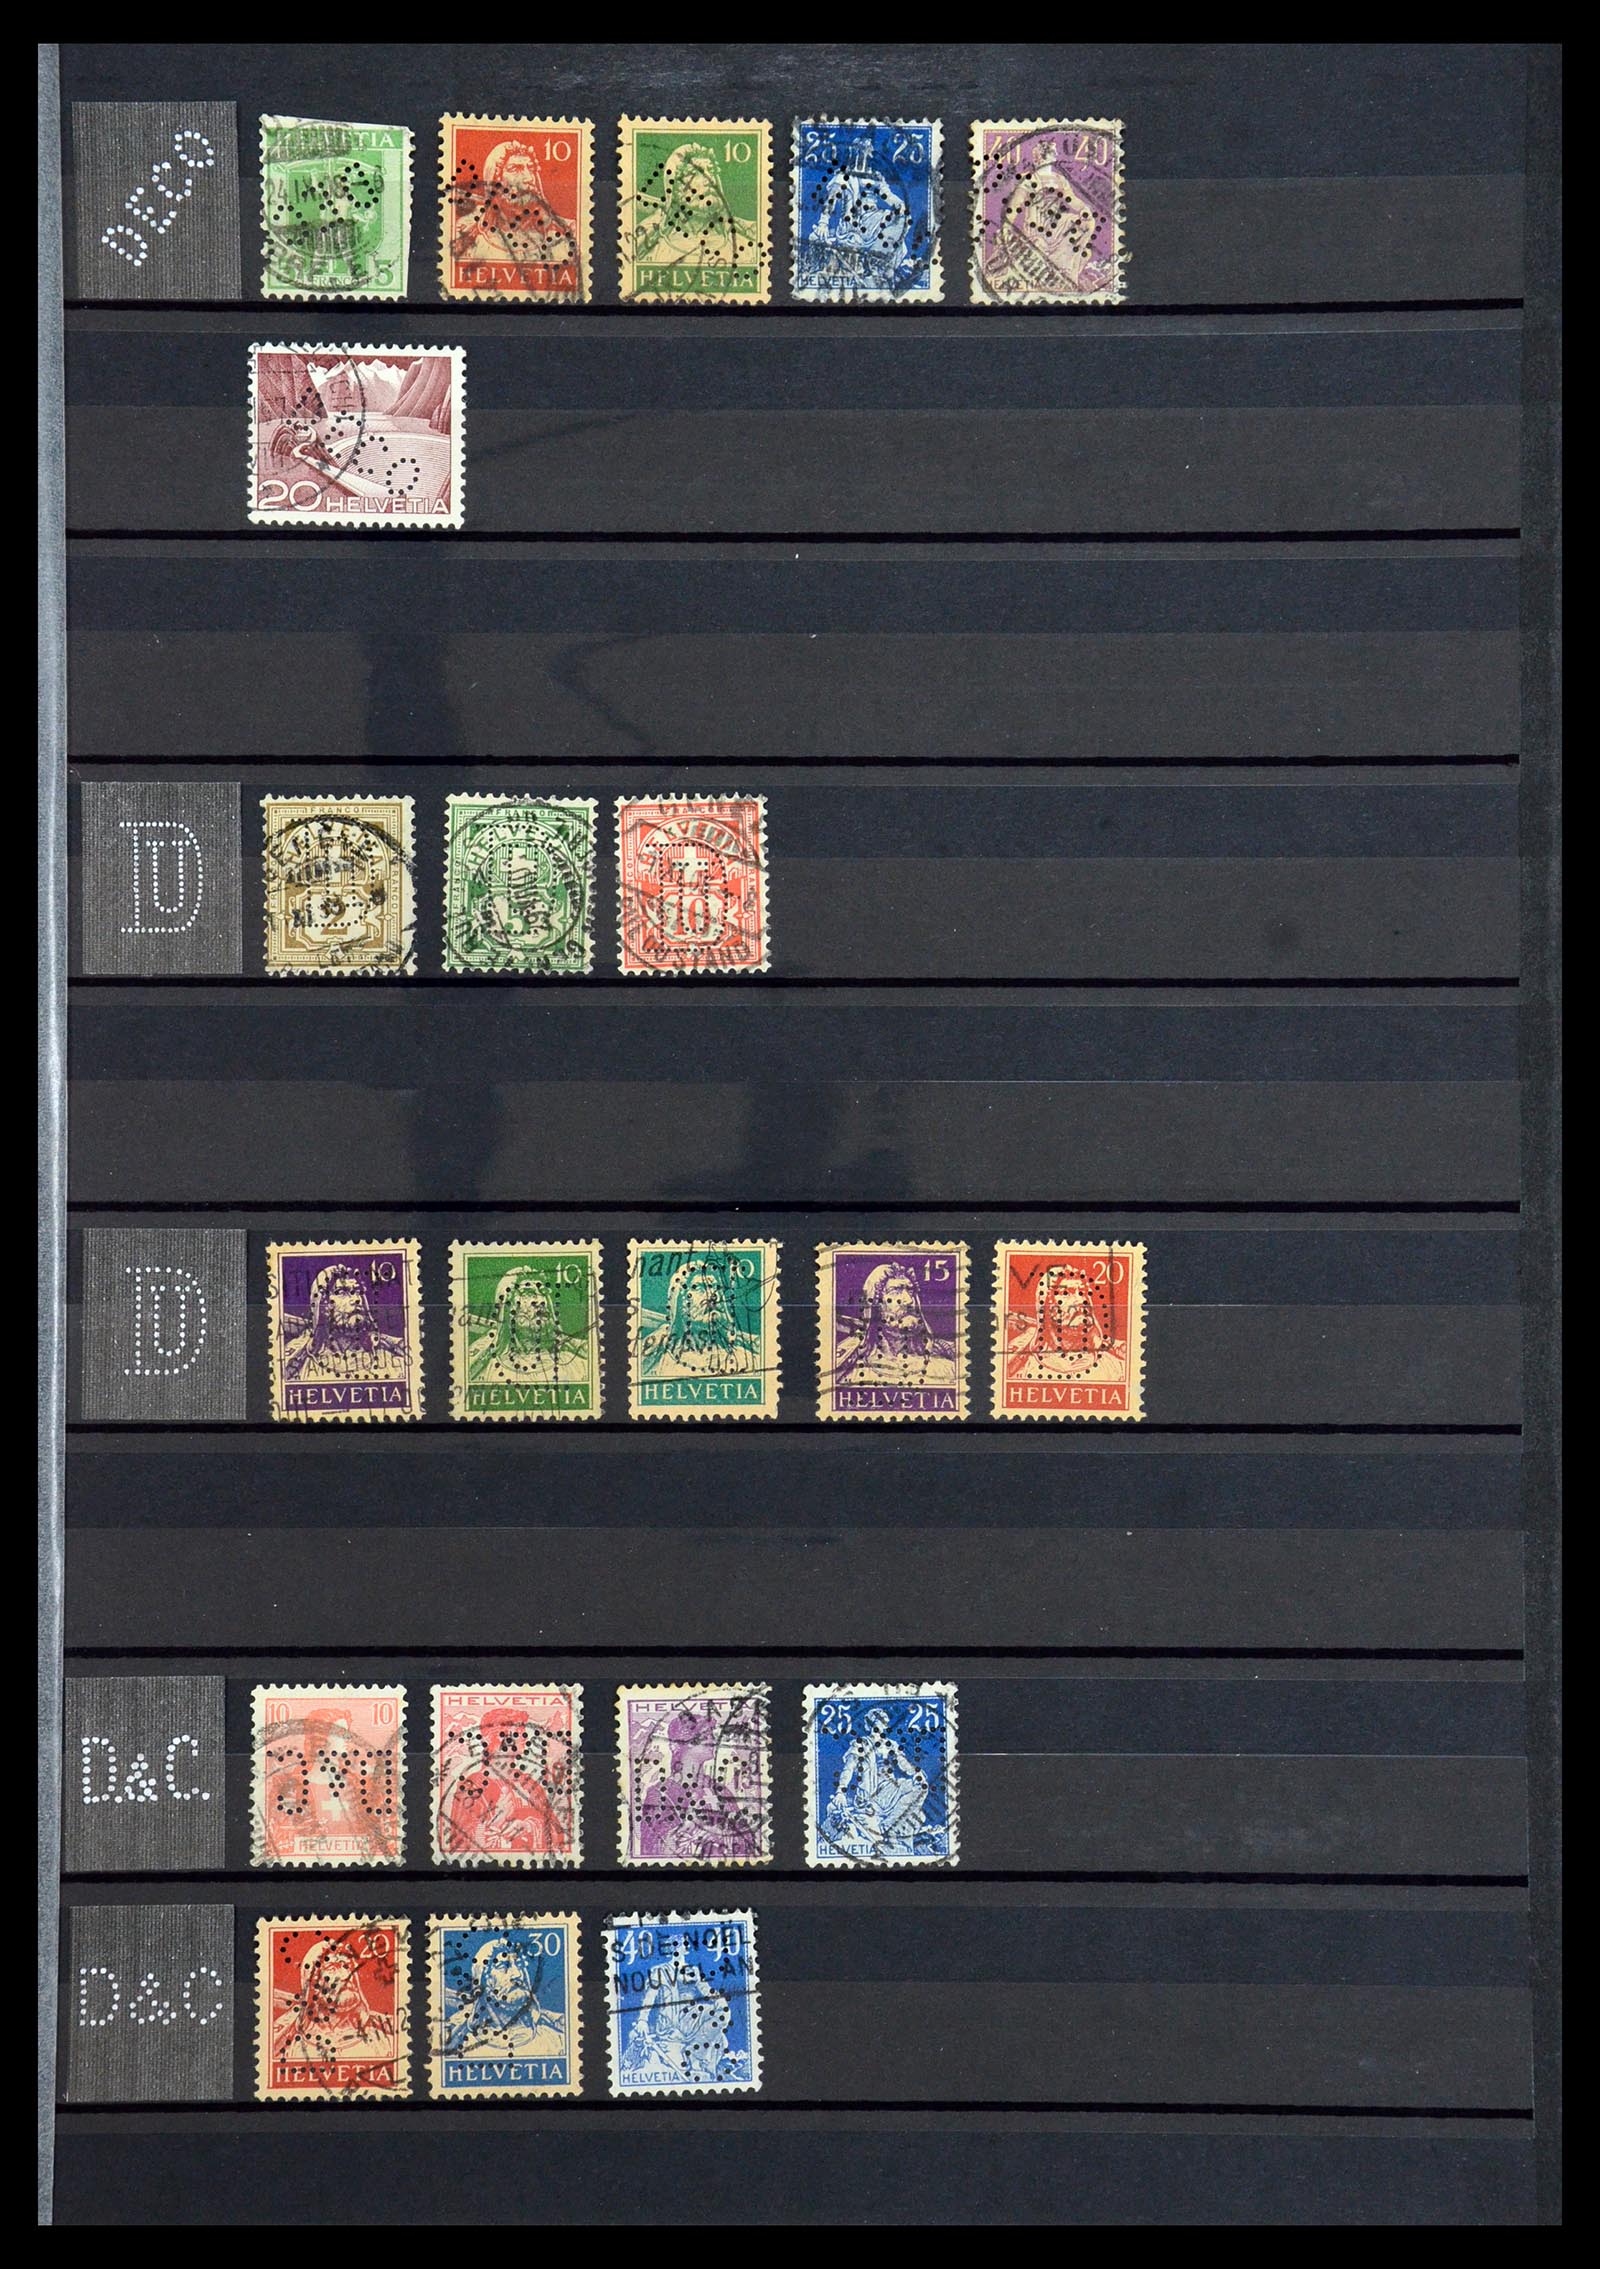 36372 015 - Stamp collection 36372 Switzerland perfins 1880-1960.